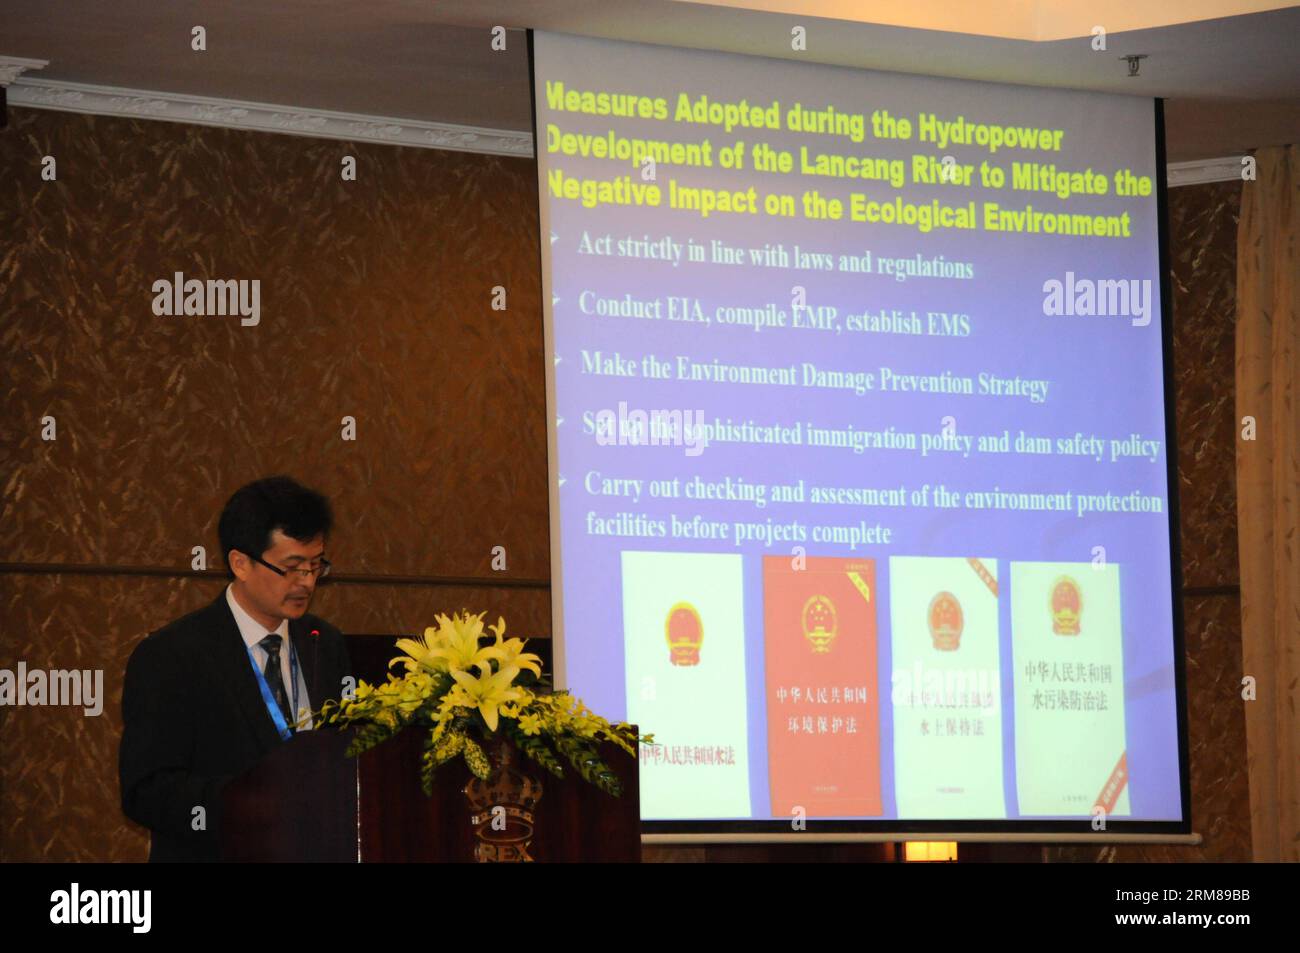 (140403) -- HO-CHI-MINH-STADT, 3. April 2014 (Xinhua) -- Zhong Yong, Mitglied des chinesischen Wasserministeriums, spricht während des zweiten Treffens der Mekong-Flusskommission (MRC) in Ho-Chi-Minh-Stadt, Vietnam, 2. April 2014. Die zweitägige internationale Konferenz über die Zusammenarbeit im Bereich der Wasser-, Energie- und Ernährungssicherheit in grenzüberschreitenden Becken unter Klimawandel begann am Mittwoch in Vietnams südlicher Ho-Chi-Minh-Stadt (HCM). (Xinhua/Nguyen Le Huyen) (djj) VIETNAM-HO-CHI-MINH-STADT-MEKONG-FLUSS-KOMMISSION GIPFEL PUBLICATIONxNOTxINxCHN Ho-Chi-Minh-Stadt 3. April 2014 XINHUA Zhong Yong Mitglied Stockfoto